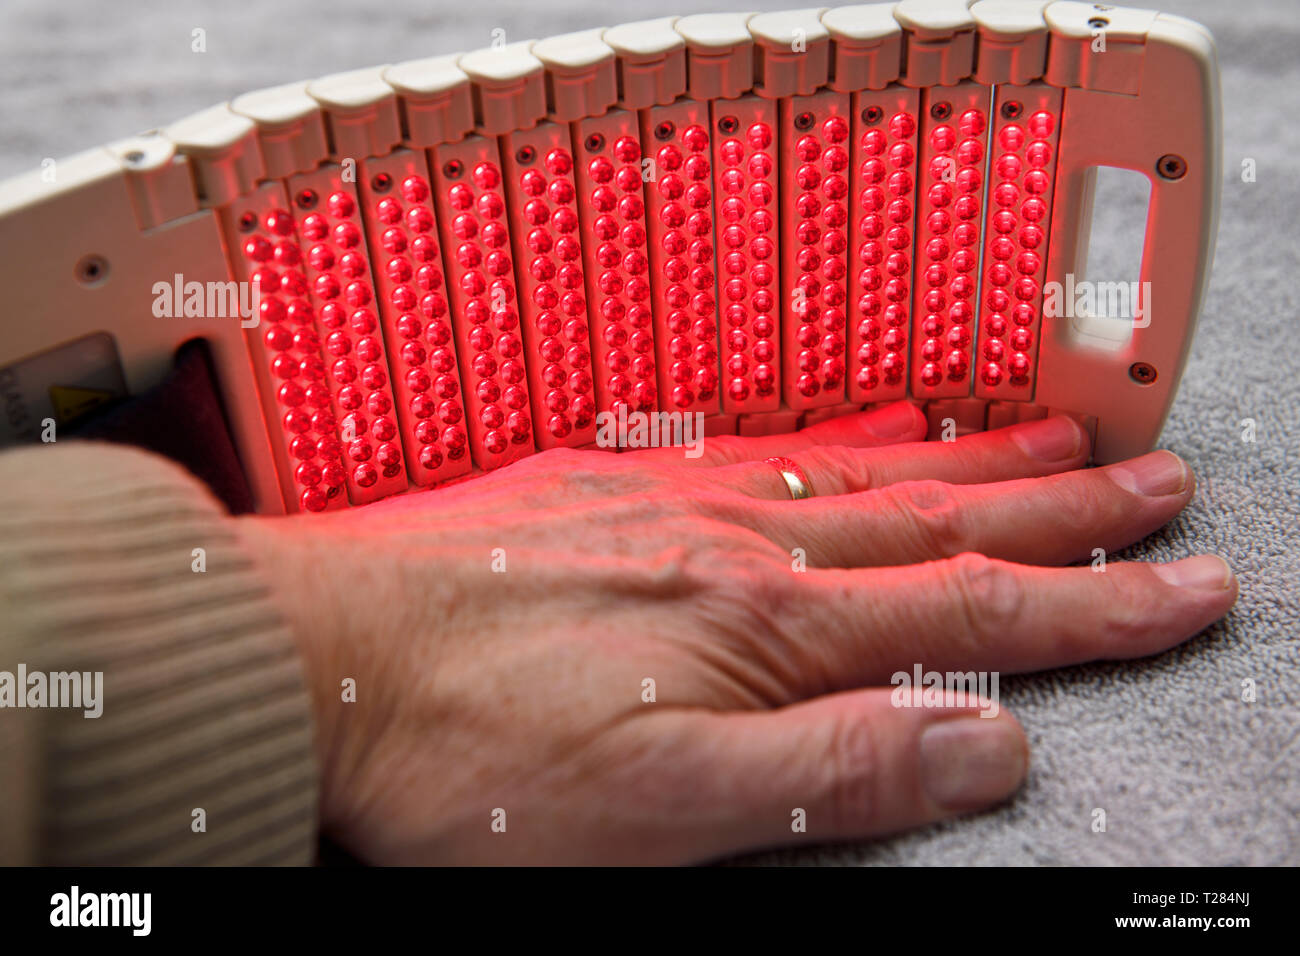 Matriz de LED láser frío pad para el tratamiento y curación de terapia de mano Foto de stock